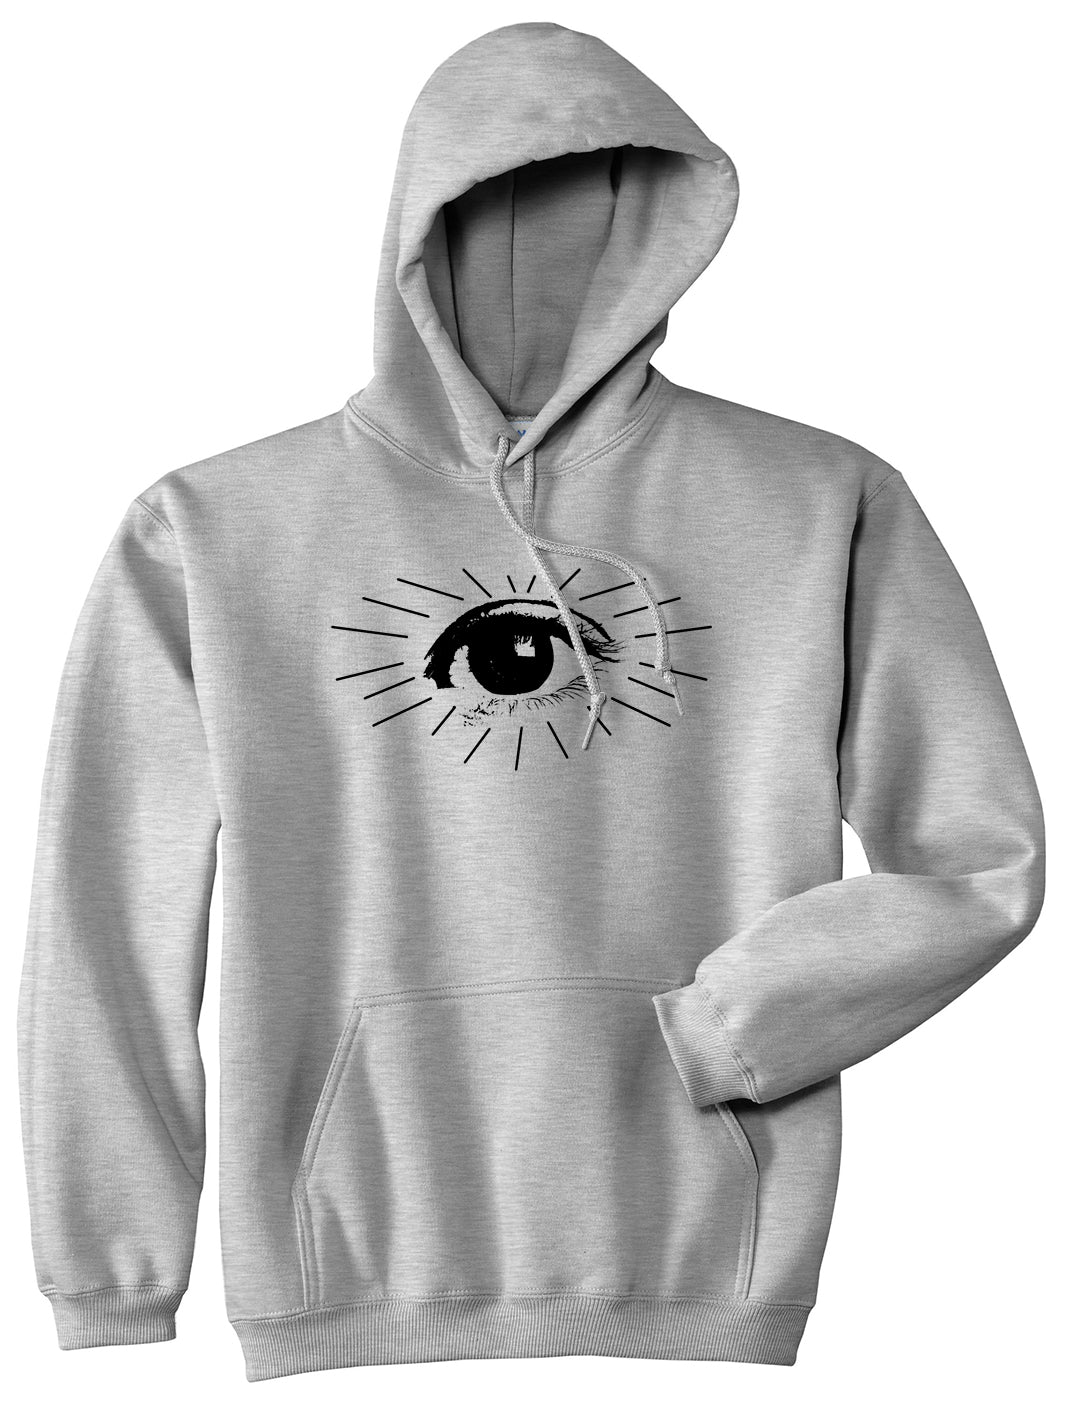 Eyeball Eyes Print Mens Grey Pullover Hoodie by KINGS OF NY